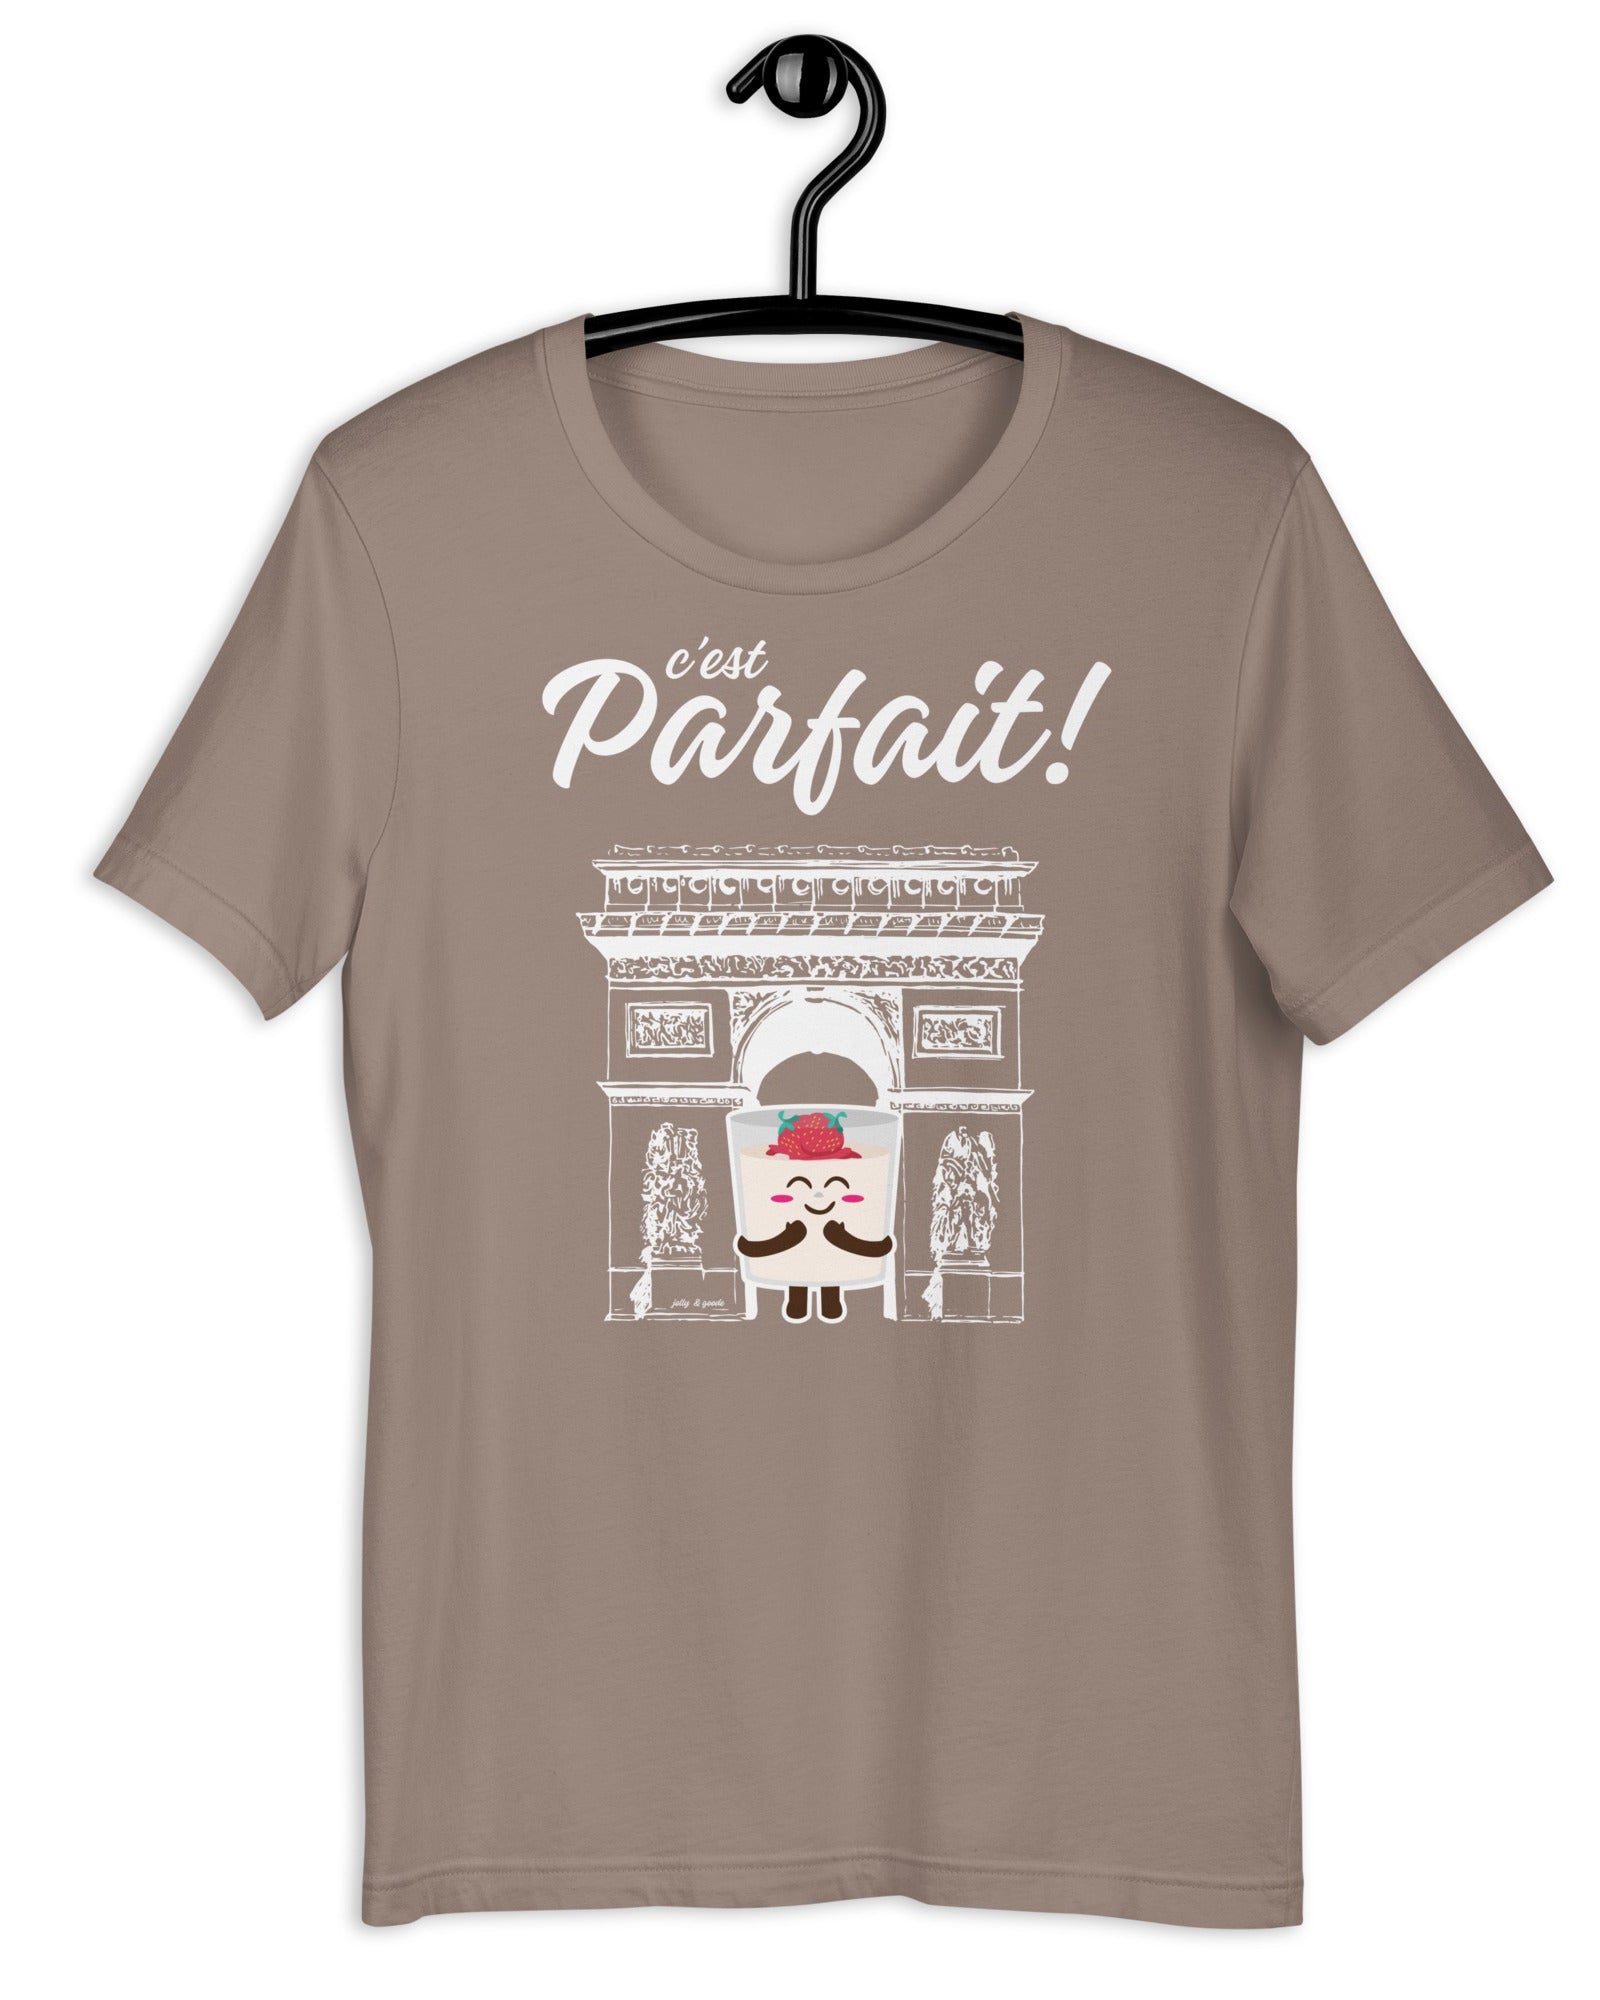 C'est Parfait! T-shirt | Parfait Arch Pebble / S Shirts & Tops Jolly & Goode